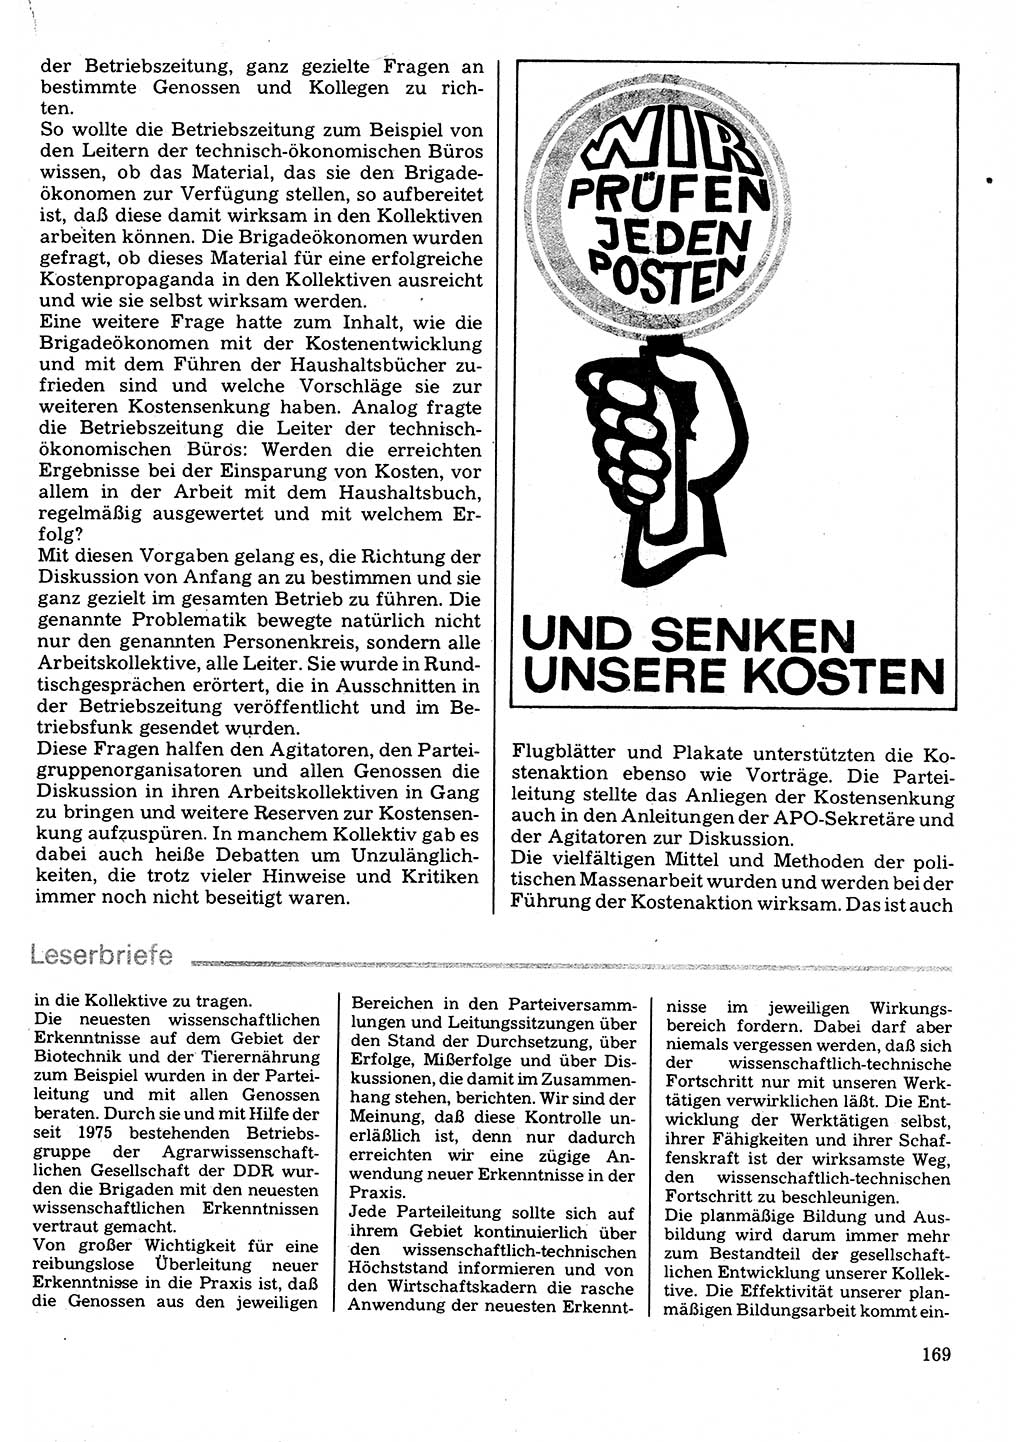 Neuer Weg (NW), Organ des Zentralkomitees (ZK) der SED (Sozialistische Einheitspartei Deutschlands) für Fragen des Parteilebens, 32. Jahrgang [Deutsche Demokratische Republik (DDR)] 1977, Seite 169 (NW ZK SED DDR 1977, S. 169)